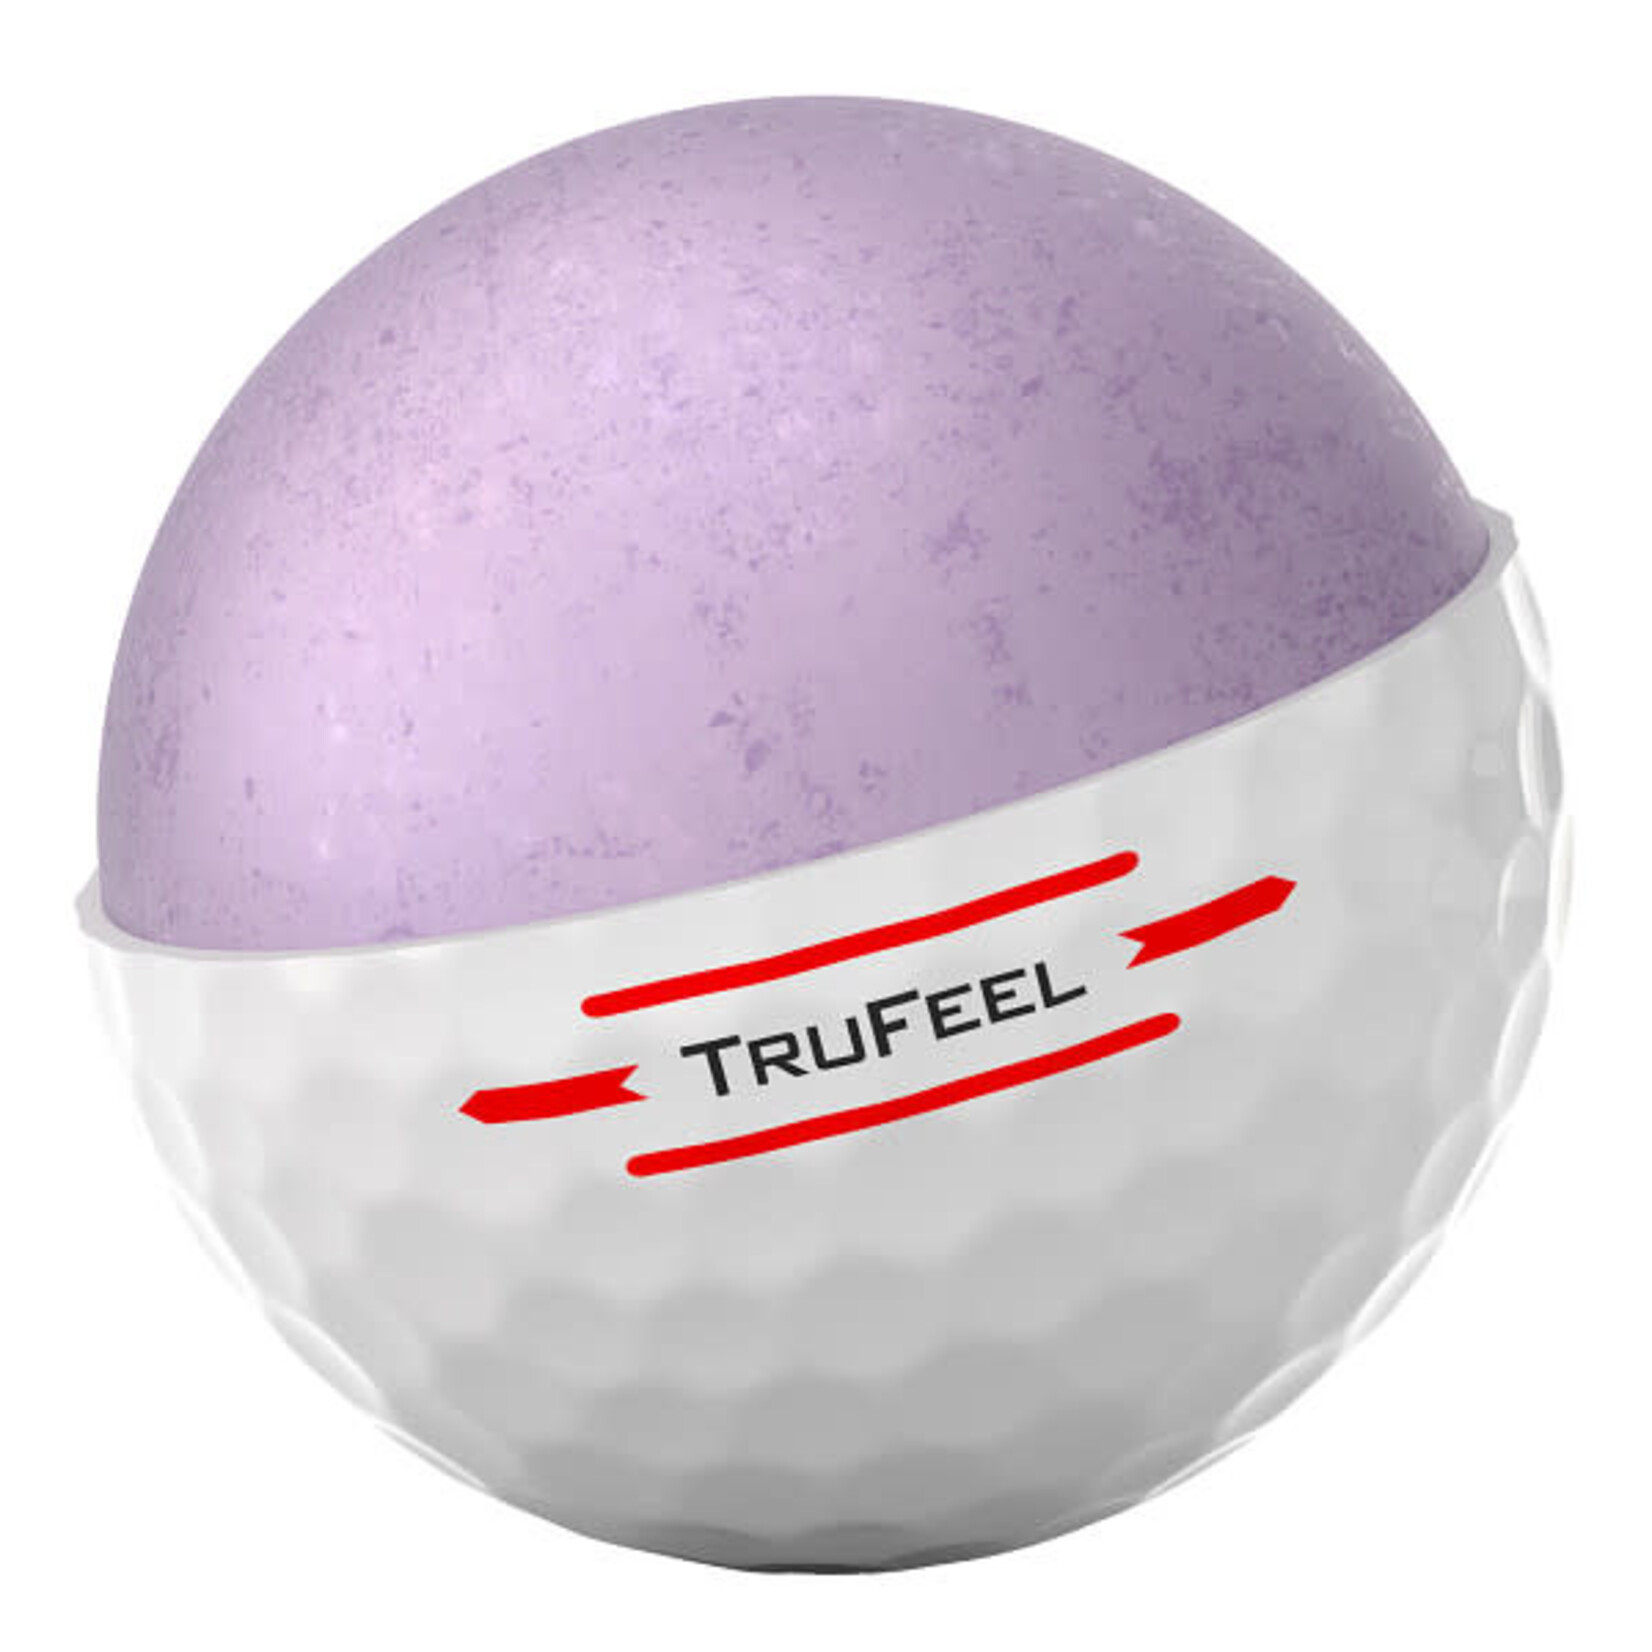 Titleist Titleist TruFeel - White